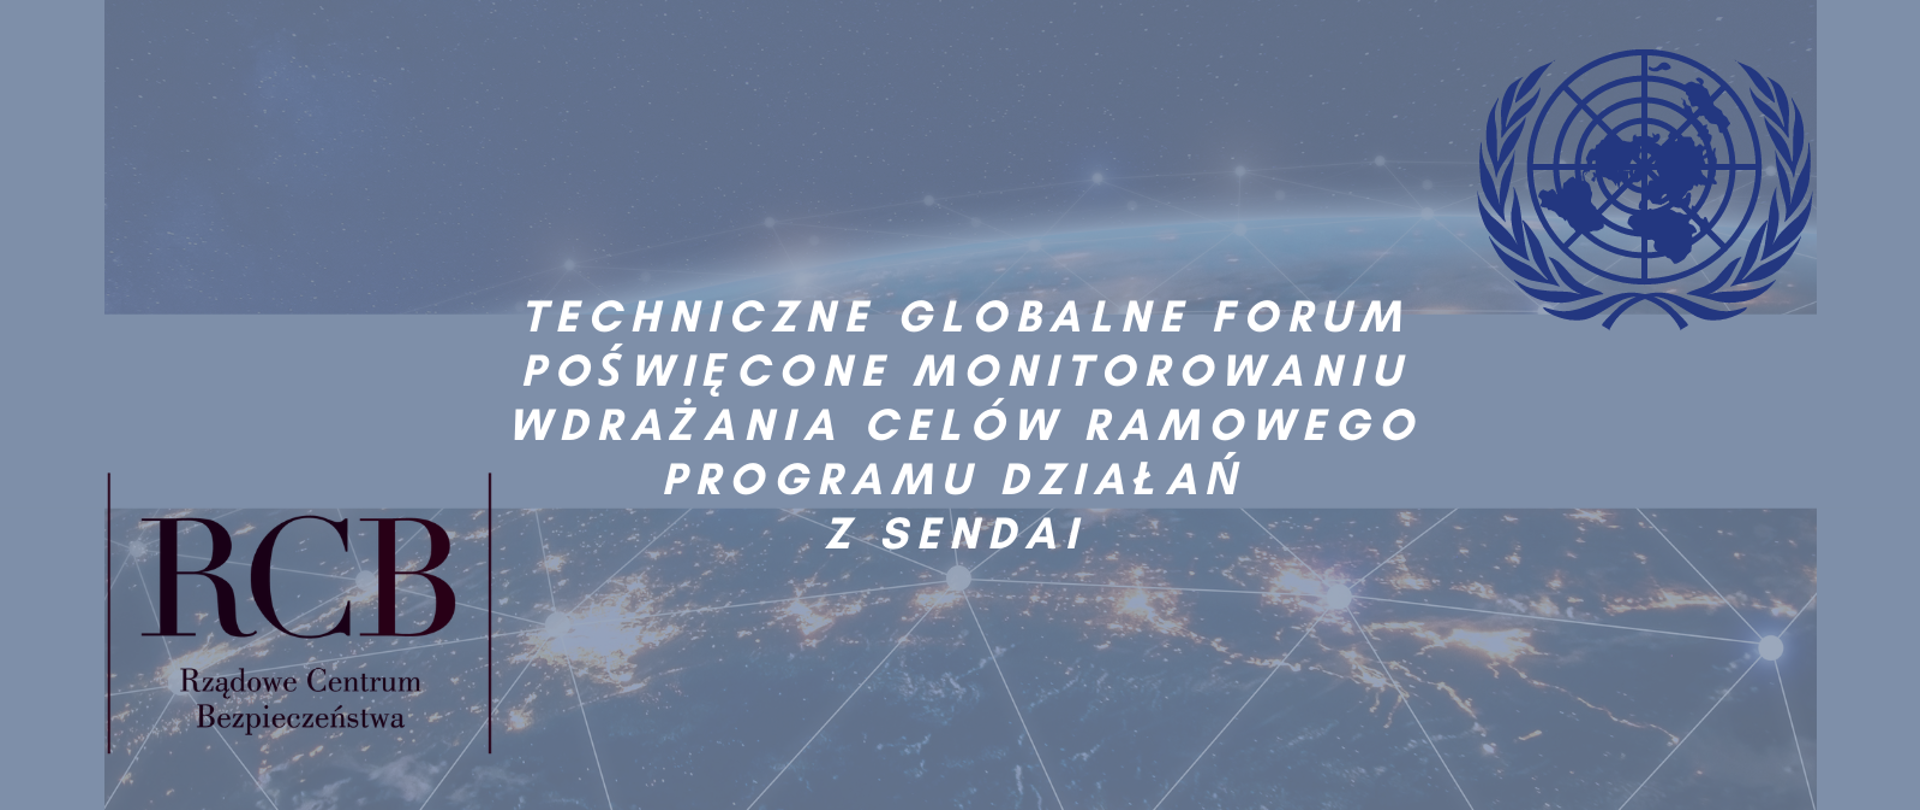 Napis: Techniczne globalne forum poświęcone monitorowaniu wdrażania celów ramowego programu działań z Sendai. Plus logotypu RCB i ONZ.